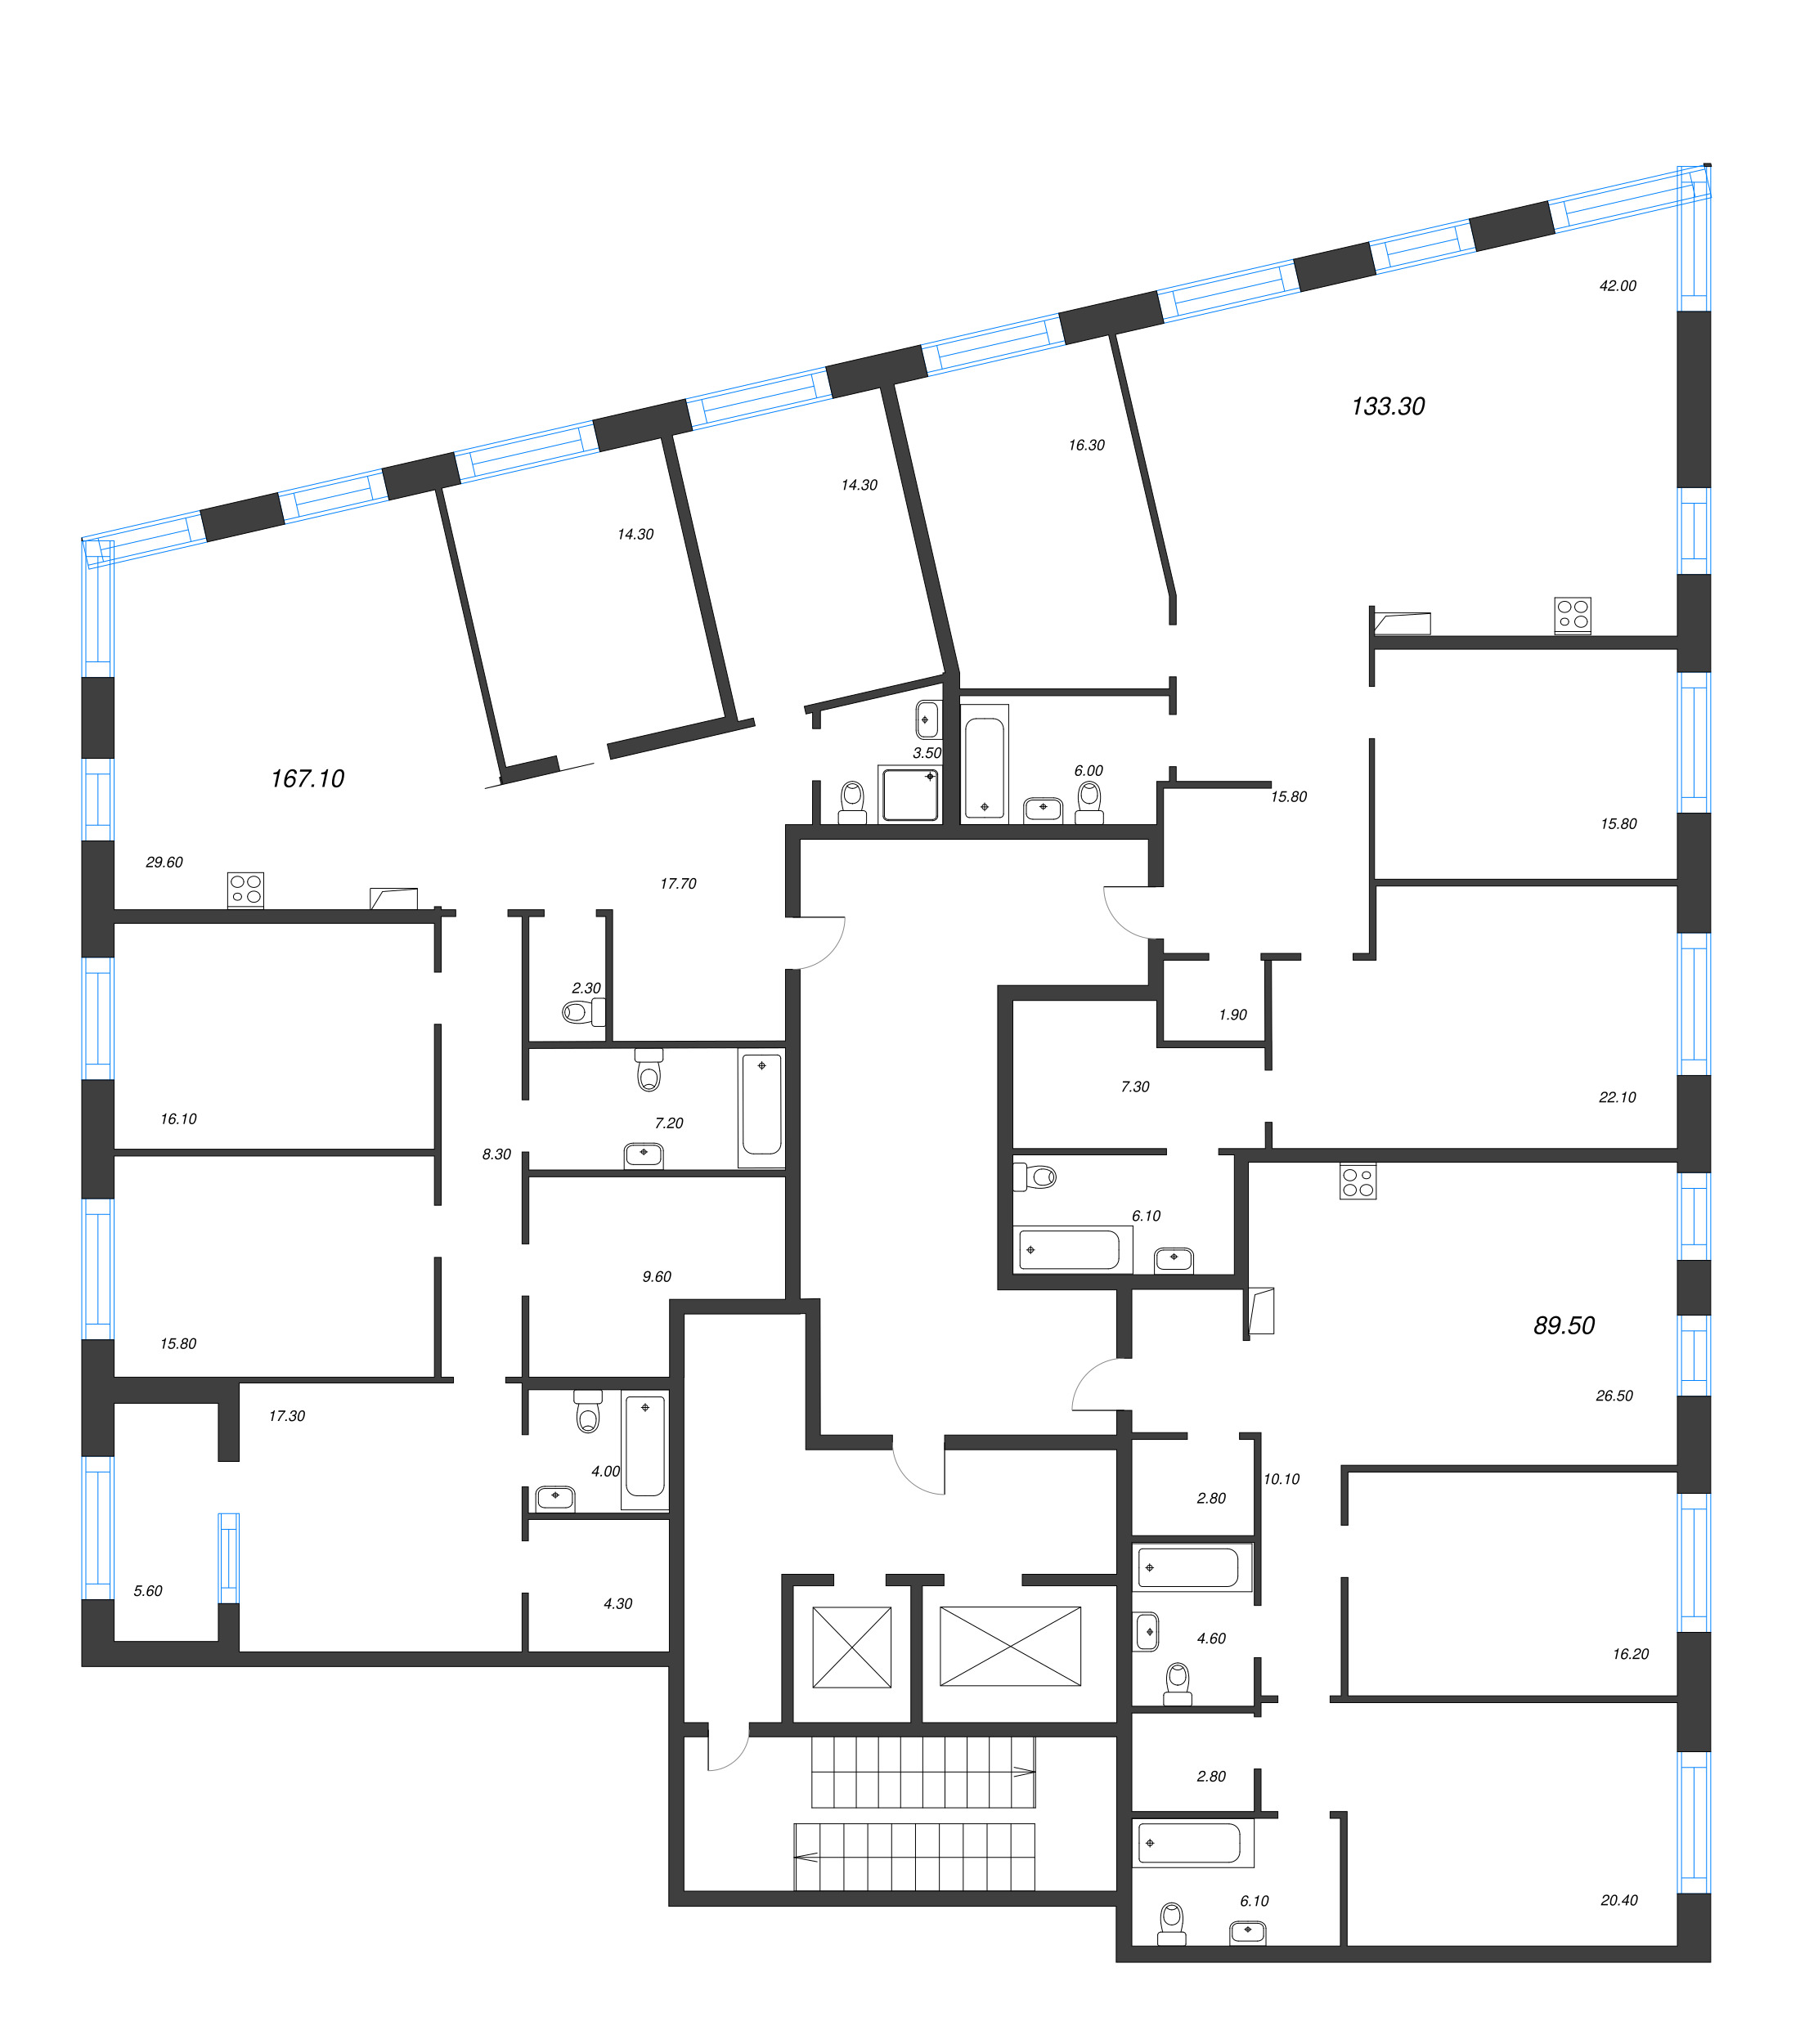 6 ккв (Евро), 167.1 м² - планировка этажа